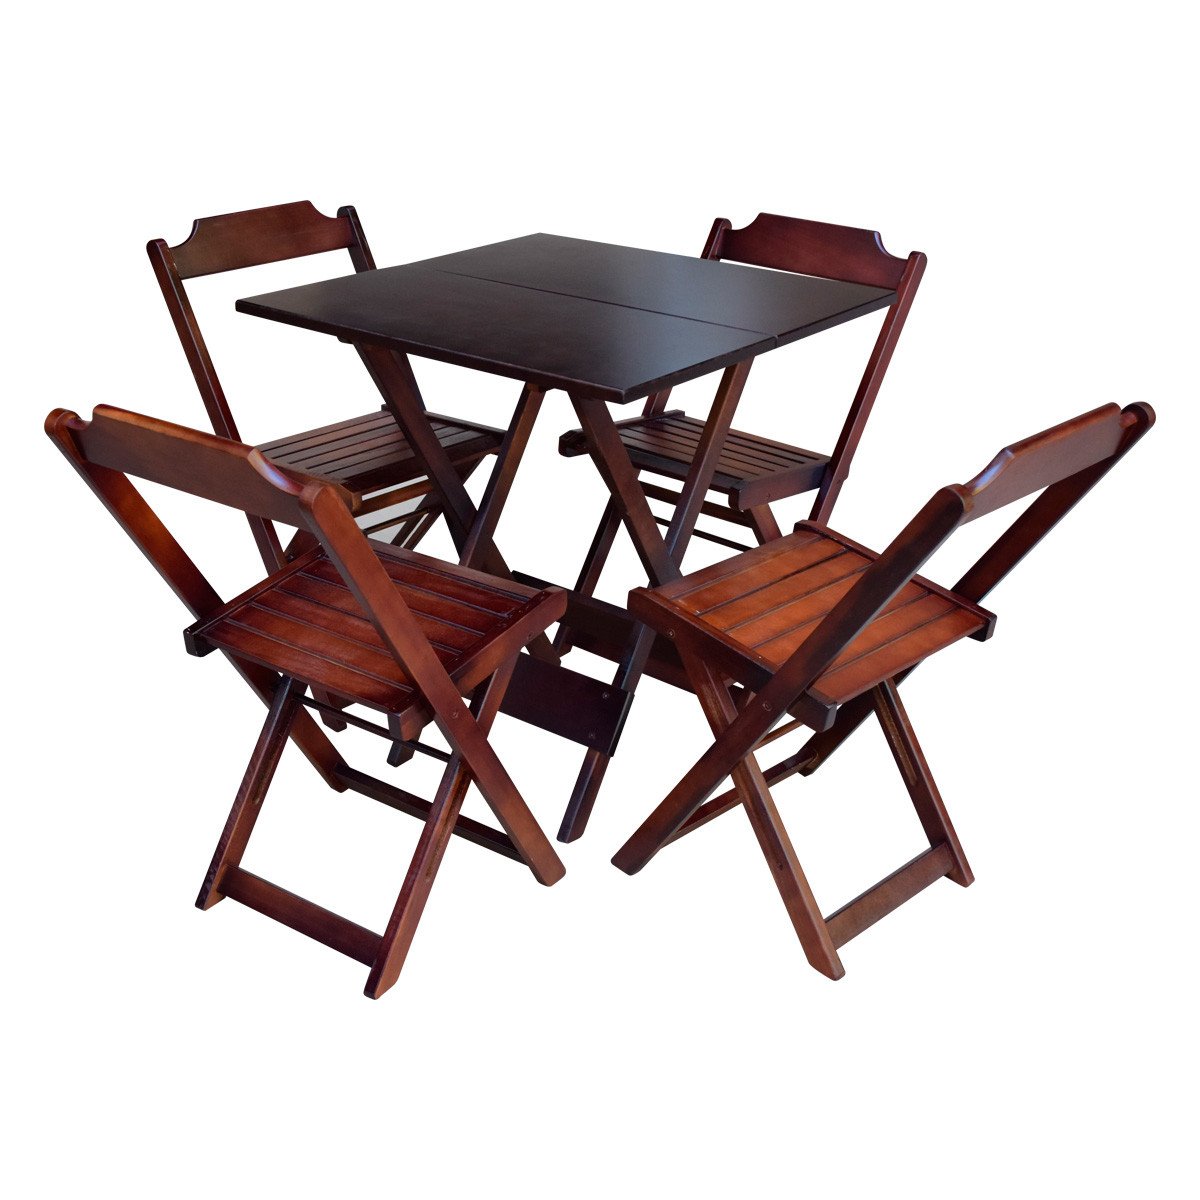 Jogo de Mesa com 4 Cadeiras de Madeira Dobrável 70x70 Ideal para Bar e Restaurante - Imbuia